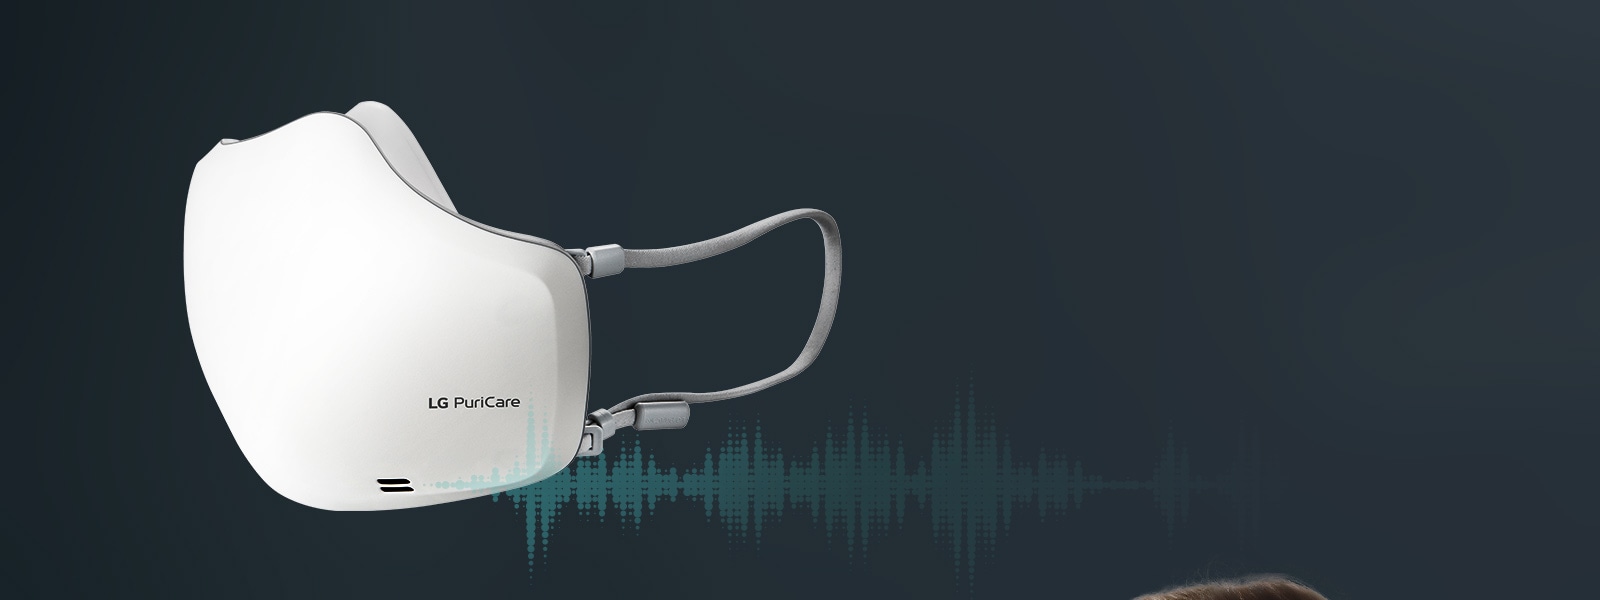 Thiết kế thông minh với công nghệ VoiceON™ giúp nghe thấy giọng nói rõ ràng.